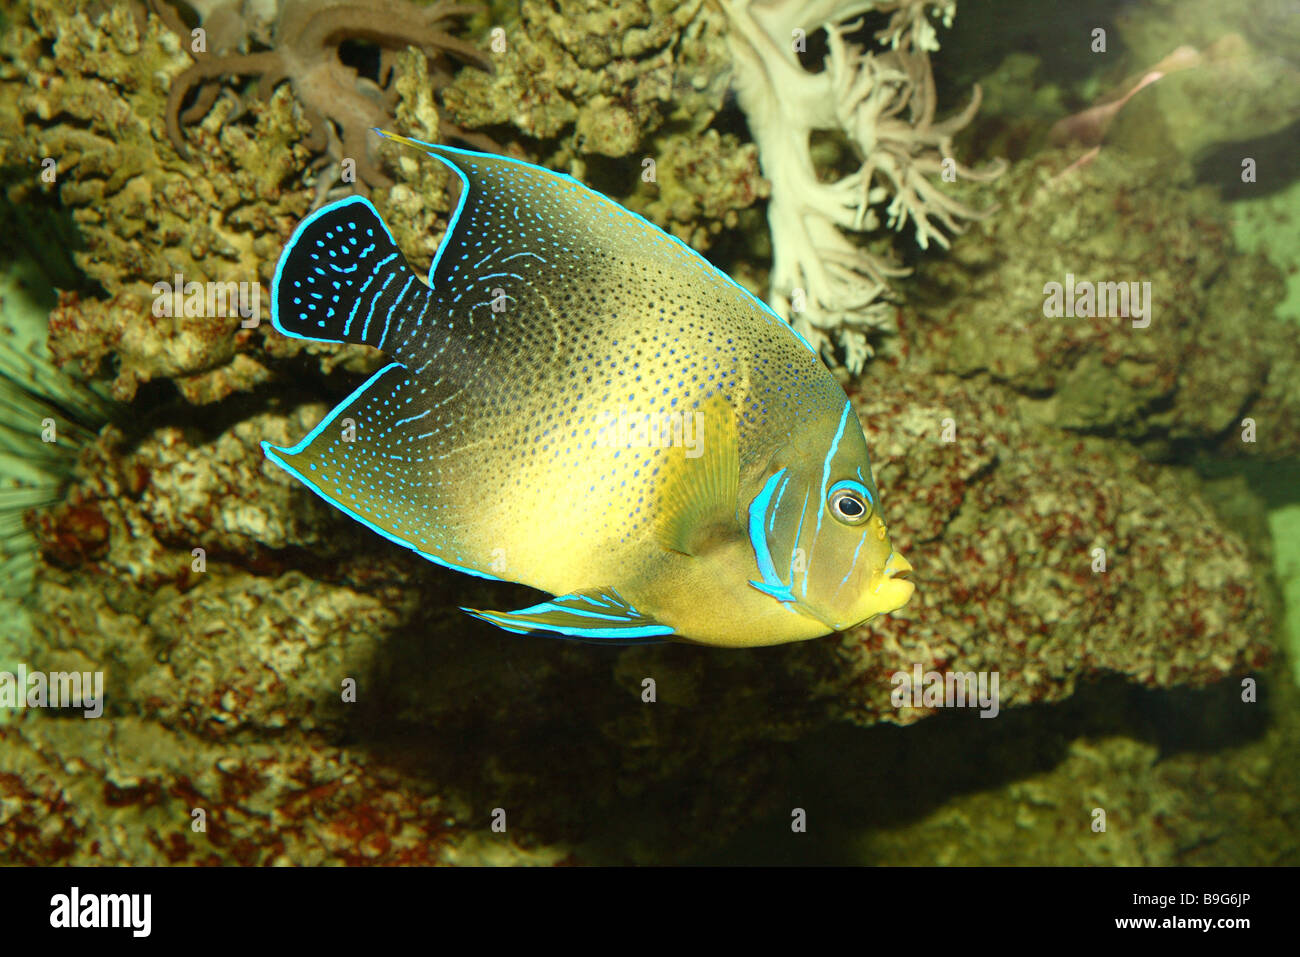 Coran-empereur Pomacanthus semicirculatus-poissons sur le côté animal mer Poisson-Meeresfisch-bull ornement poisson poisson empereur Banque D'Images